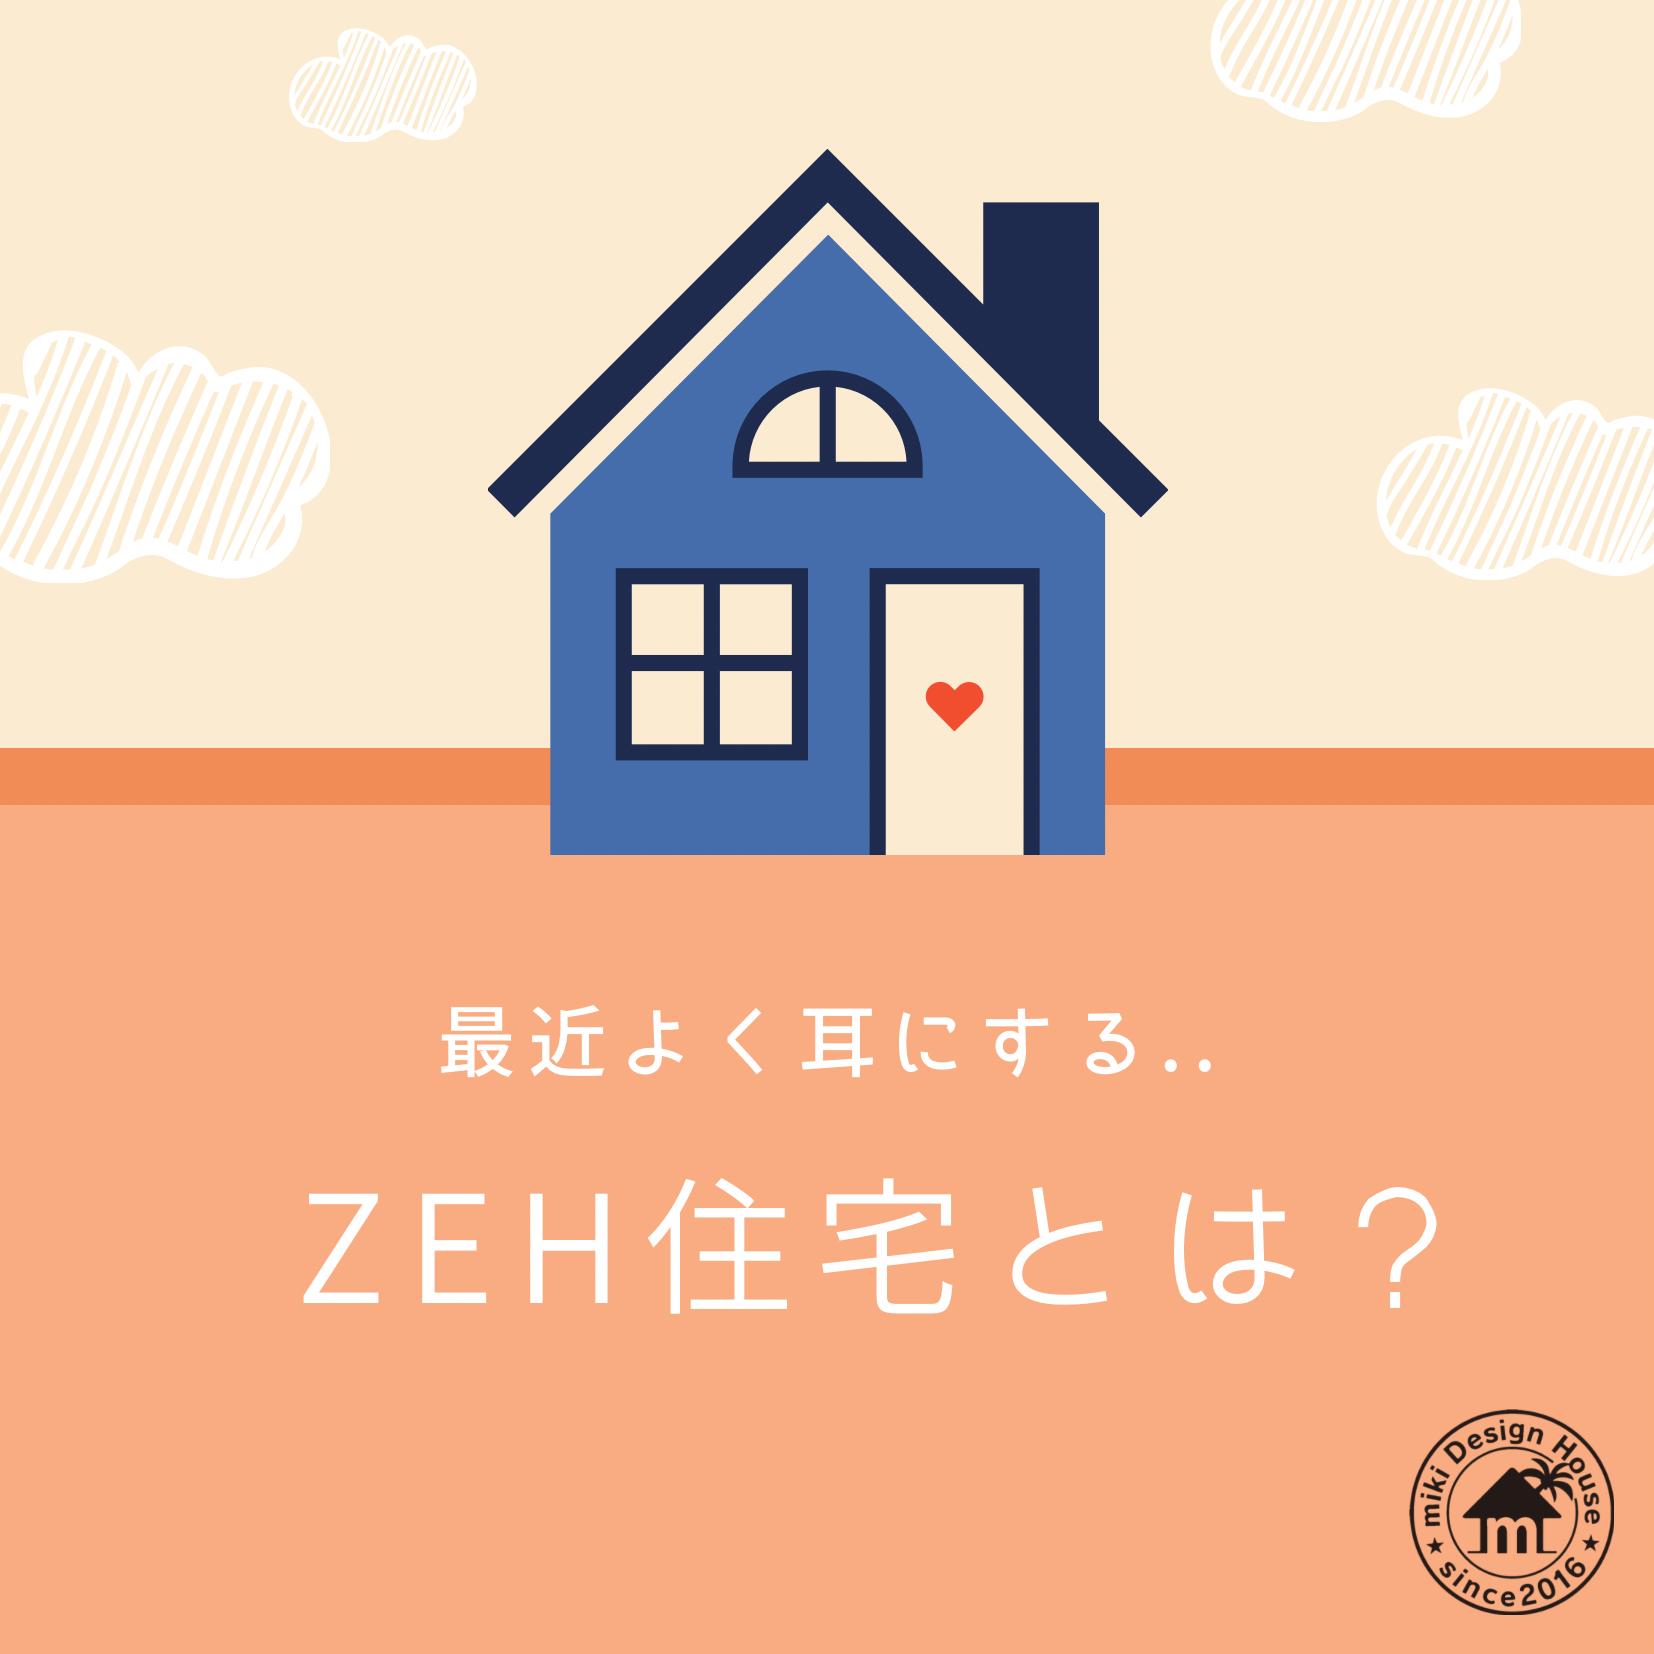 【最近よく耳にする、ZEH住宅ってなに？】宮崎市で新築・リフォーム| mikiデザインハウス